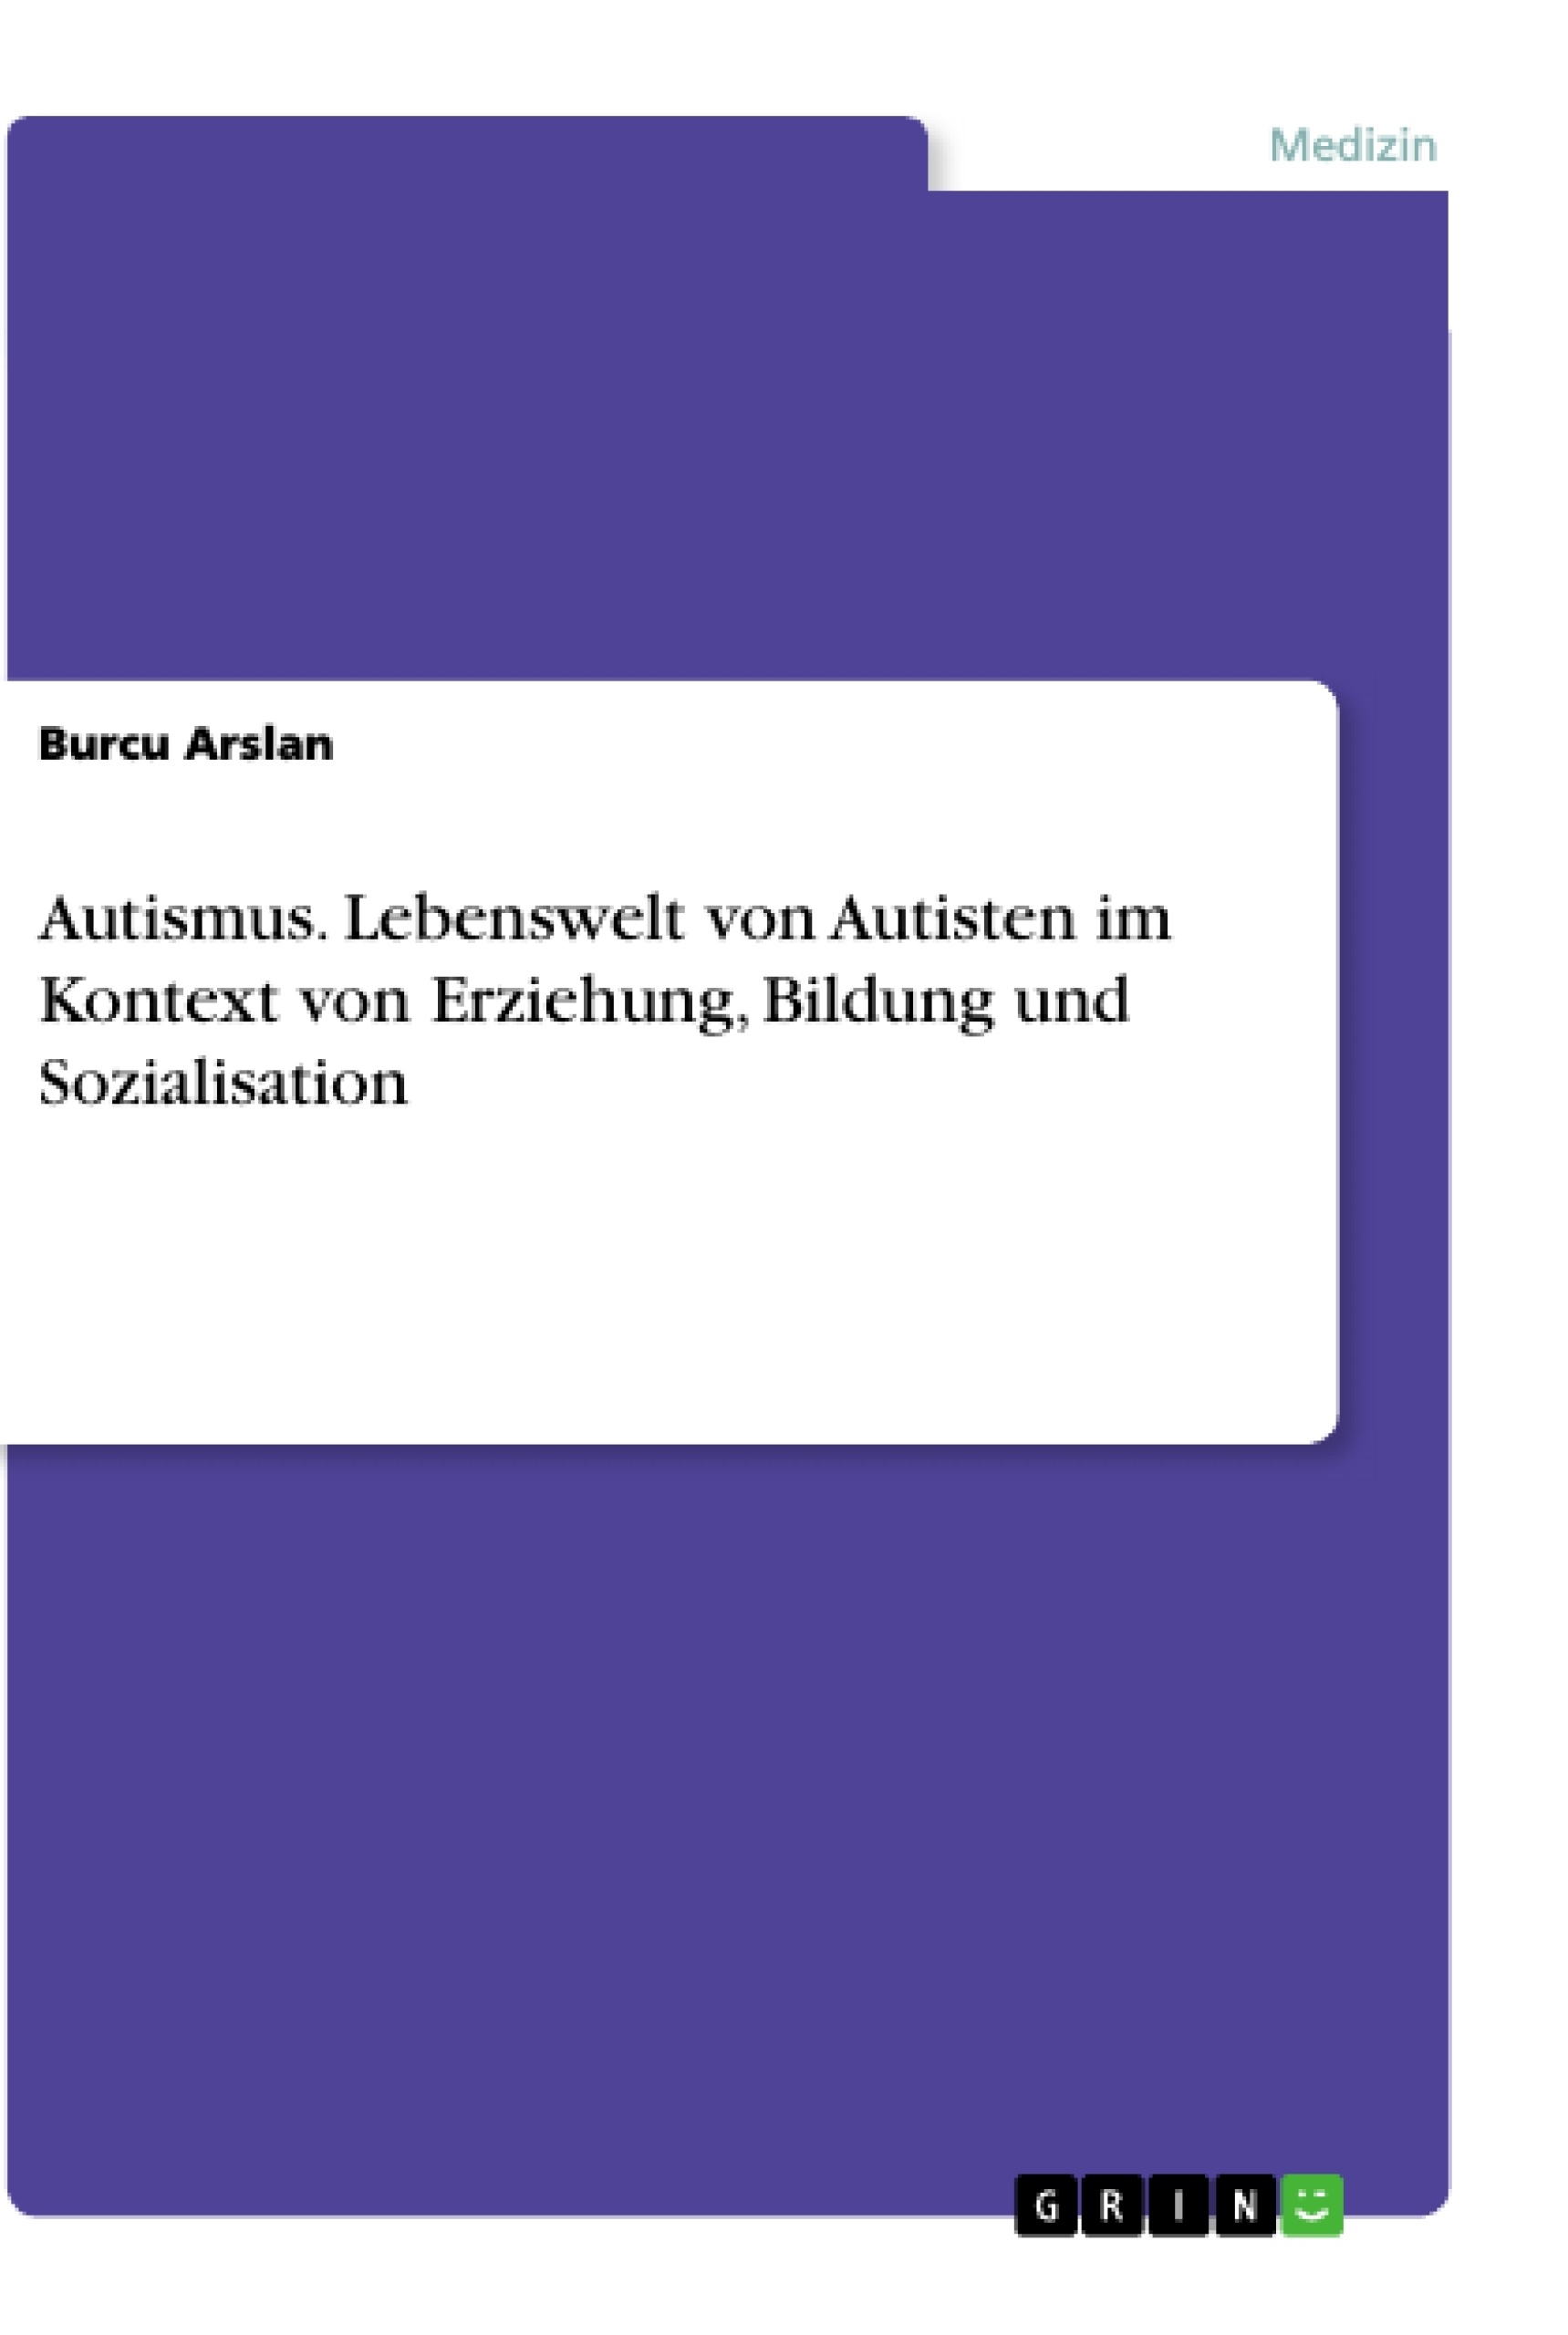 Title: Autismus. Lebenswelt von Autisten im Kontext von Erziehung, Bildung und Sozialisation